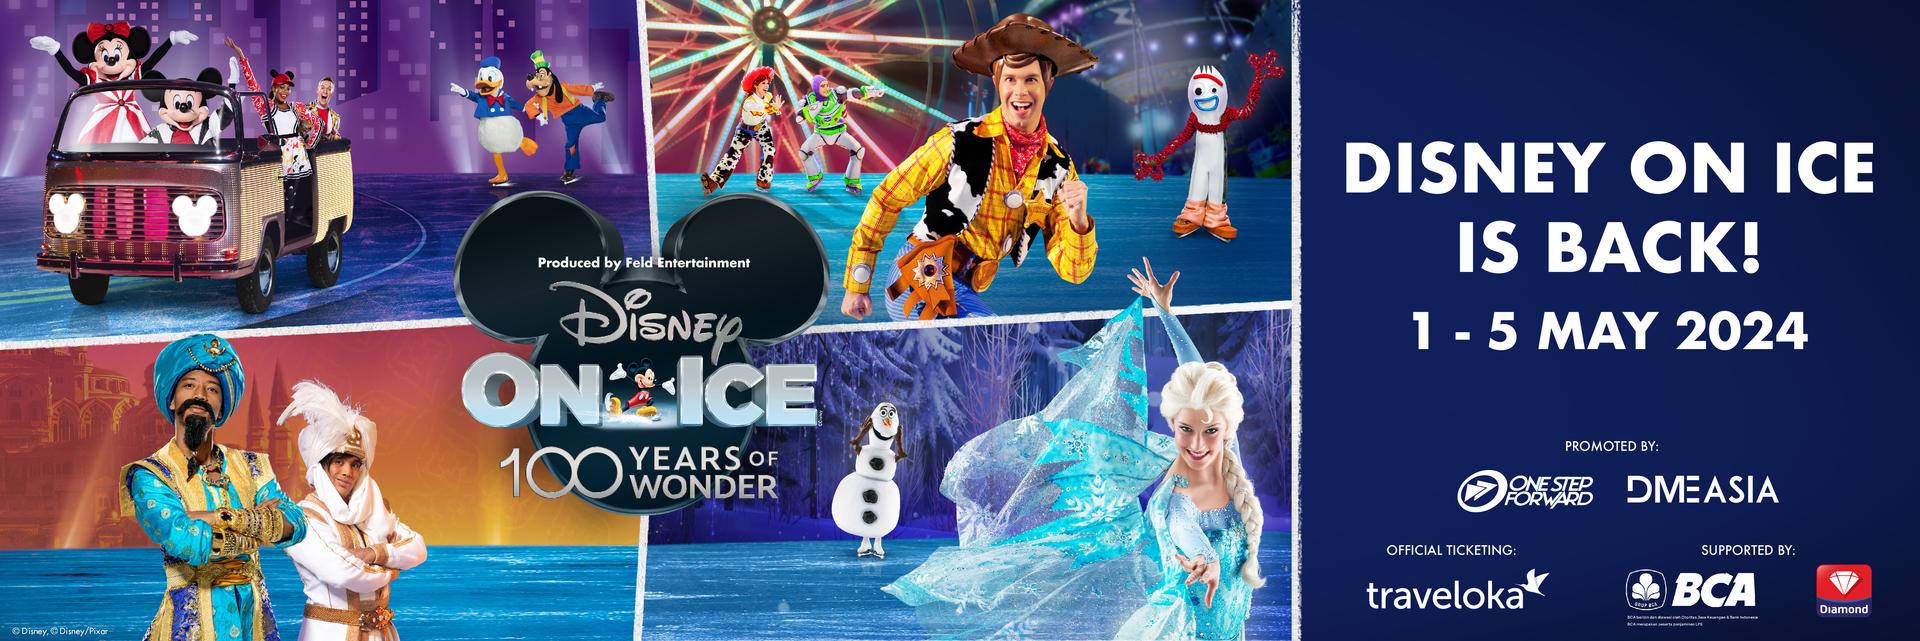 Disney On Ice 2024 “100 Years of Wonder” Tickets on Traveloka